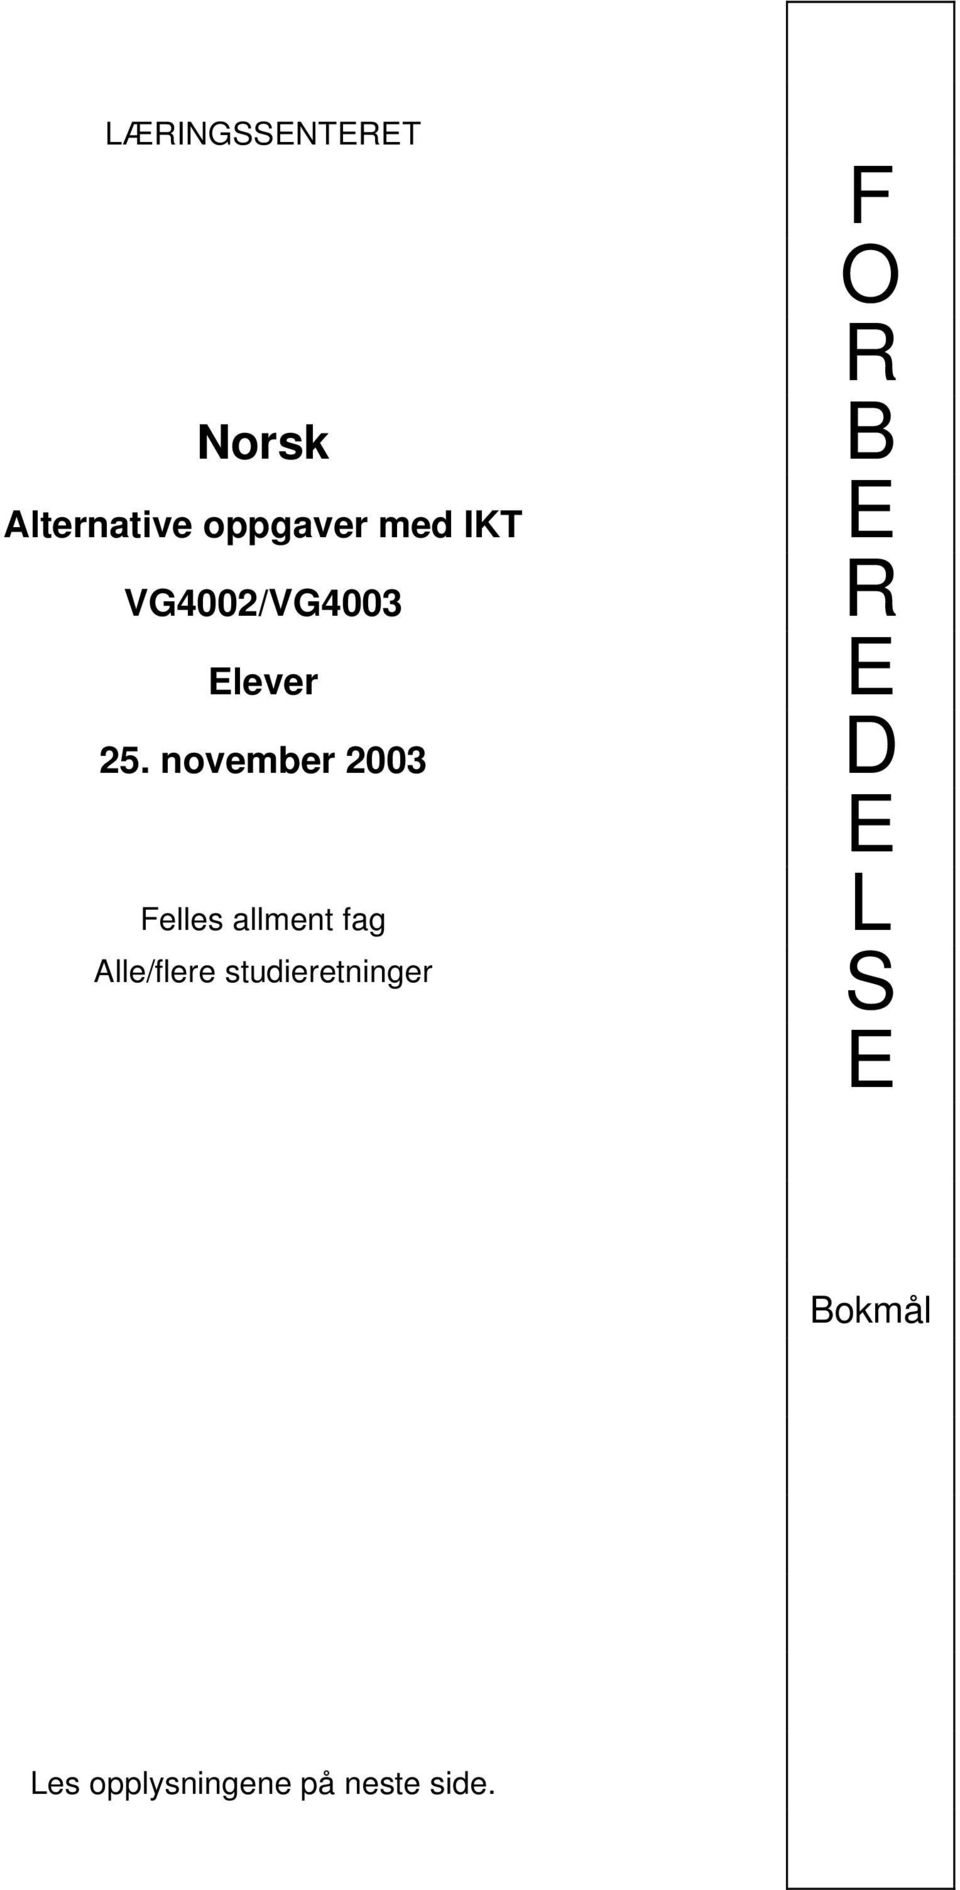 november 2003 D Felles allment fag Alle/flere